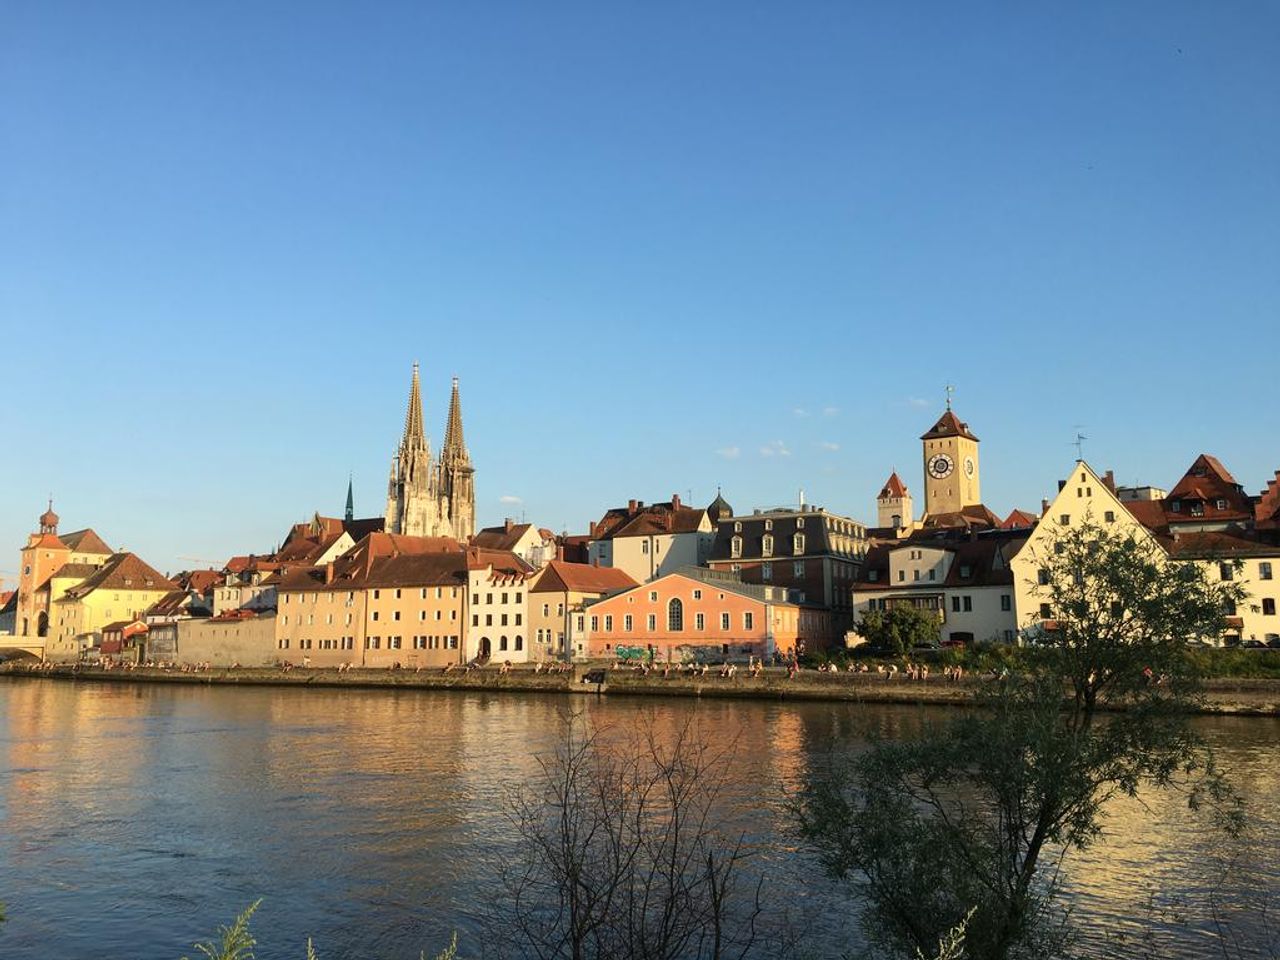 Strudelfahrt auf der Donau - 4 Tage in Regensburg